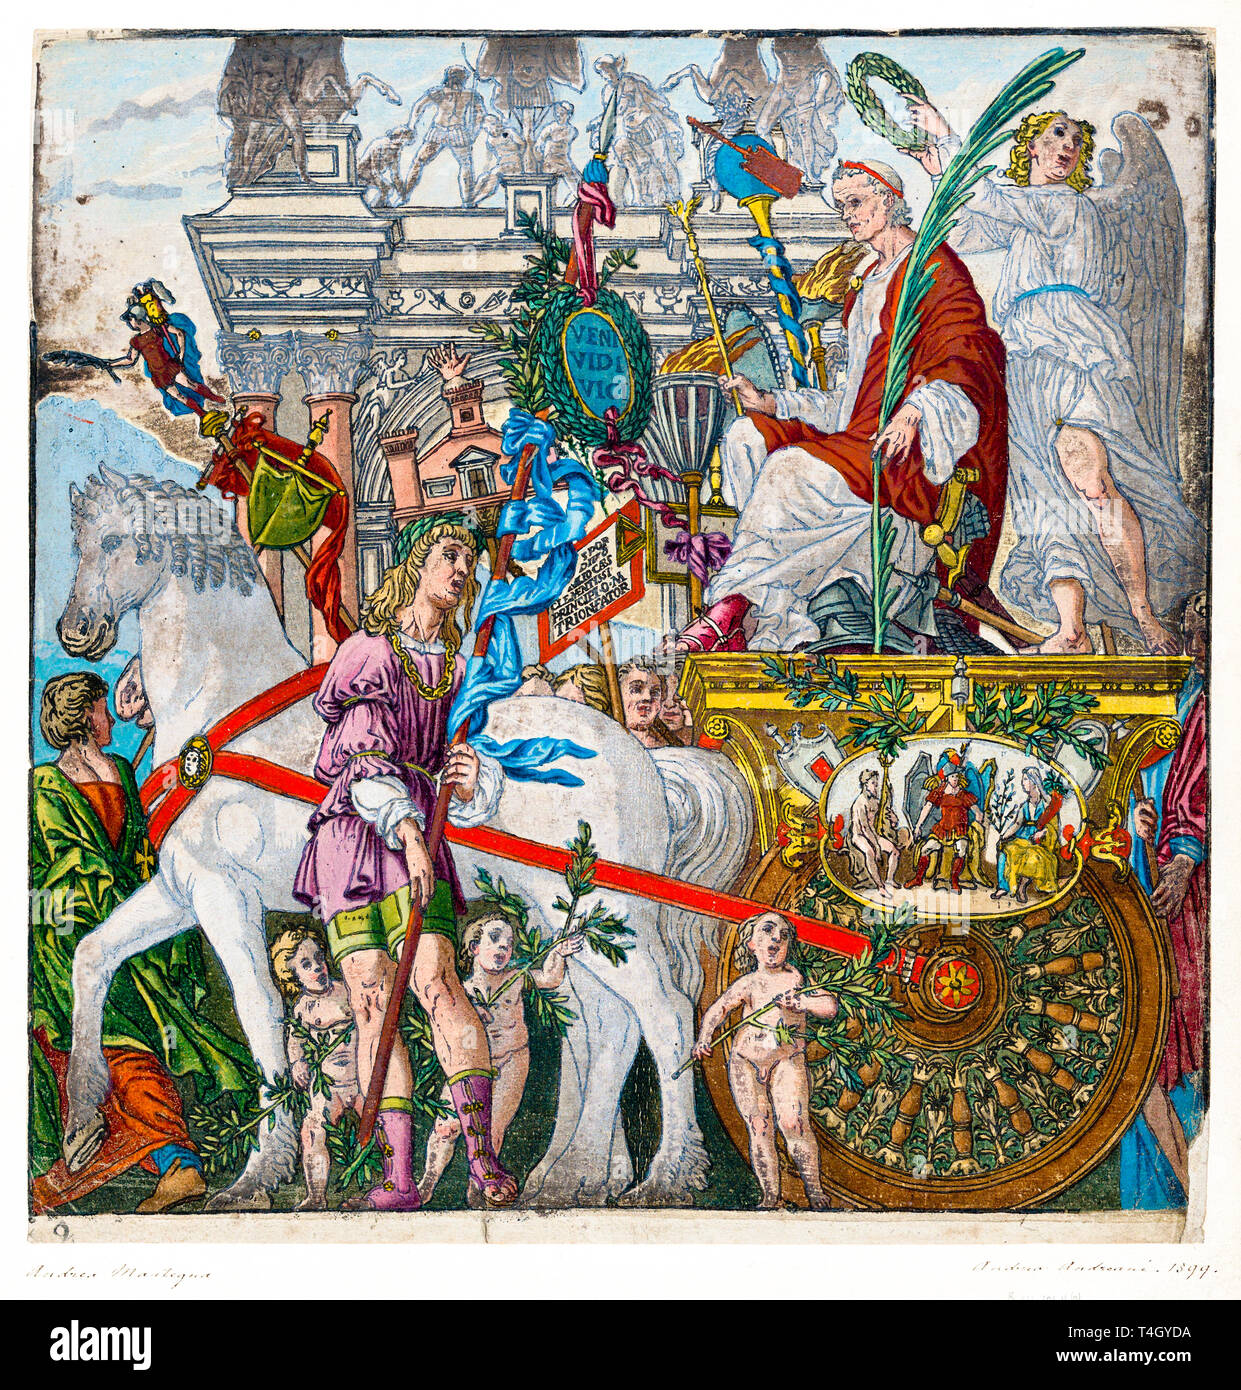 Jules César dans son char tiré par des chevaux, Andrea Andreani, coloriés à la main d'impression gravure sur bois, 1599 Banque D'Images